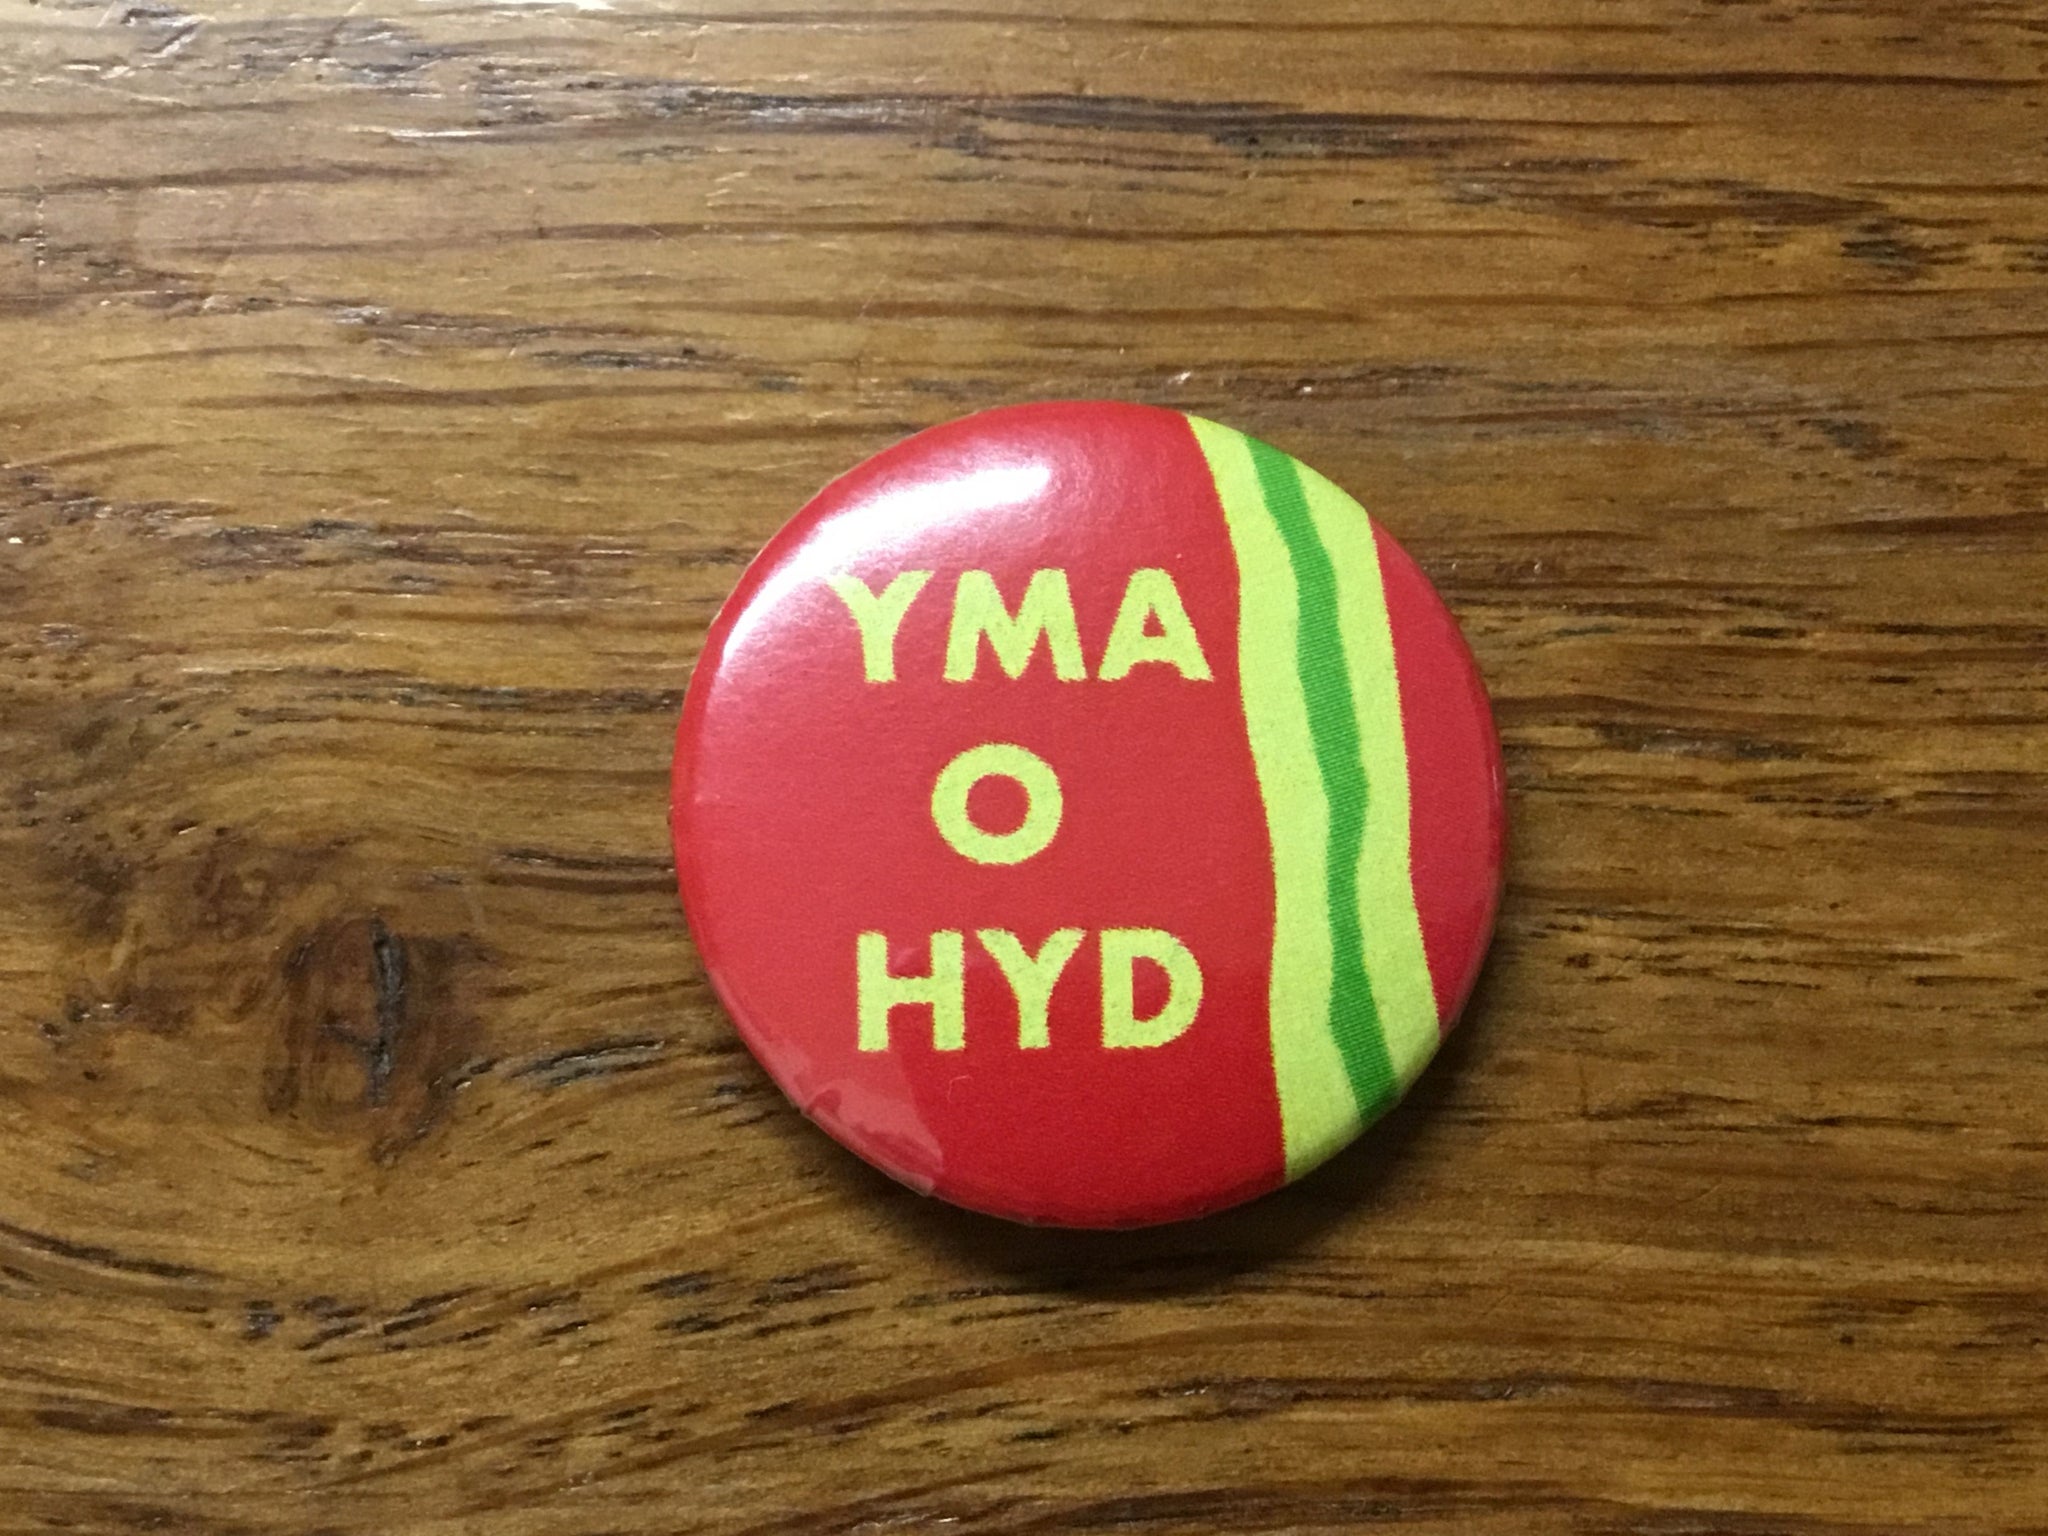 'Yma o Hyd' - Button Magnet